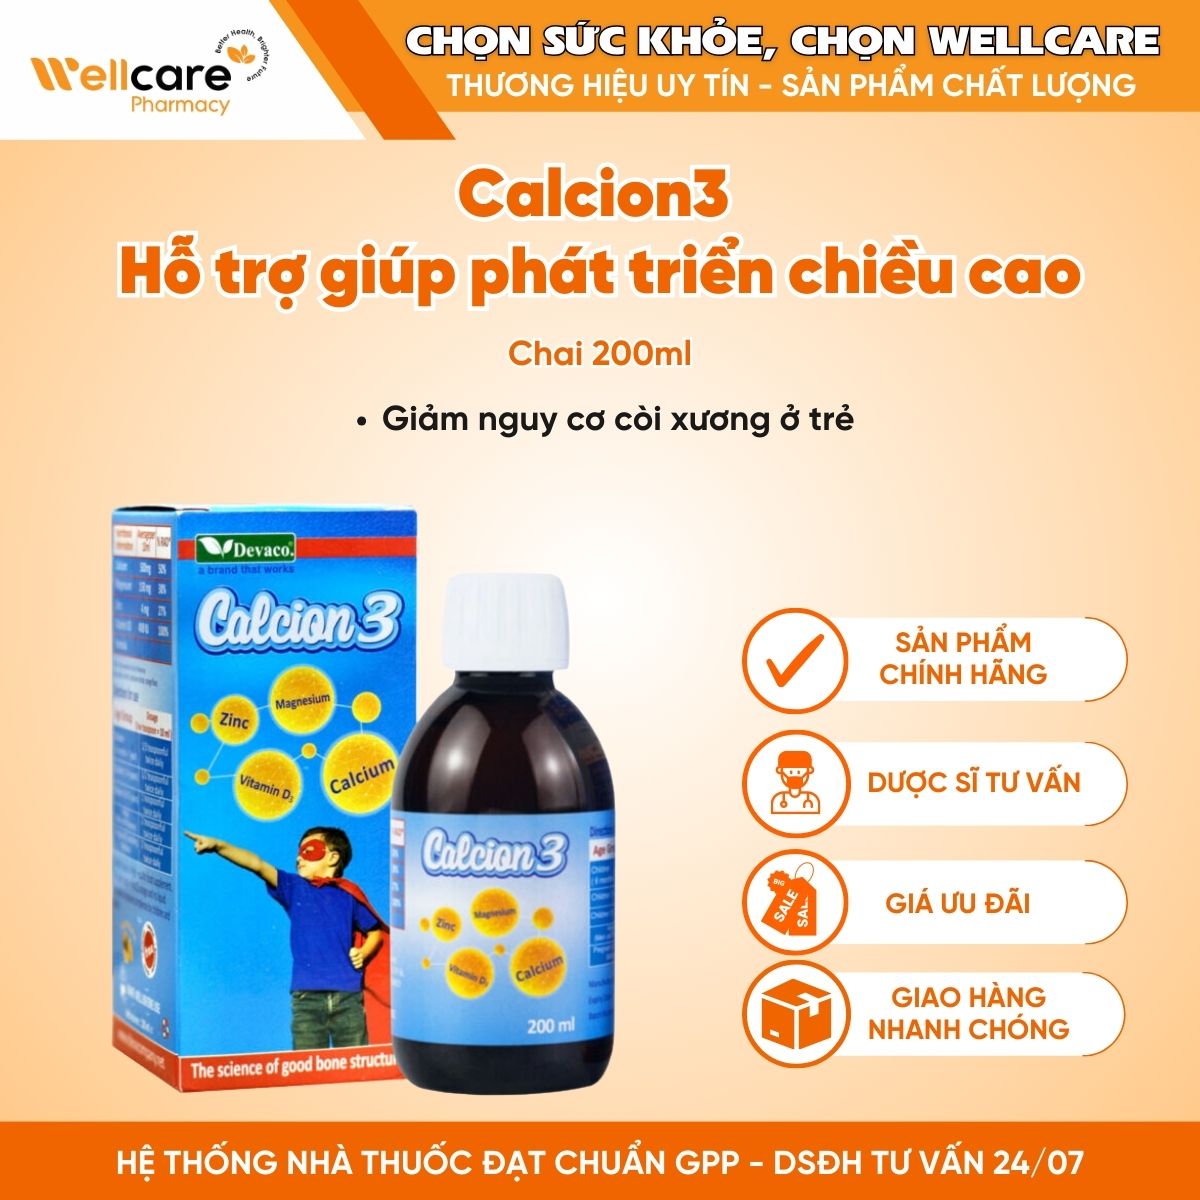 Calcion3 – Hỗ trợ giúp phát triển chiều cao, giảm nguy cơ còi xương ở trẻ (Chai 200ml)